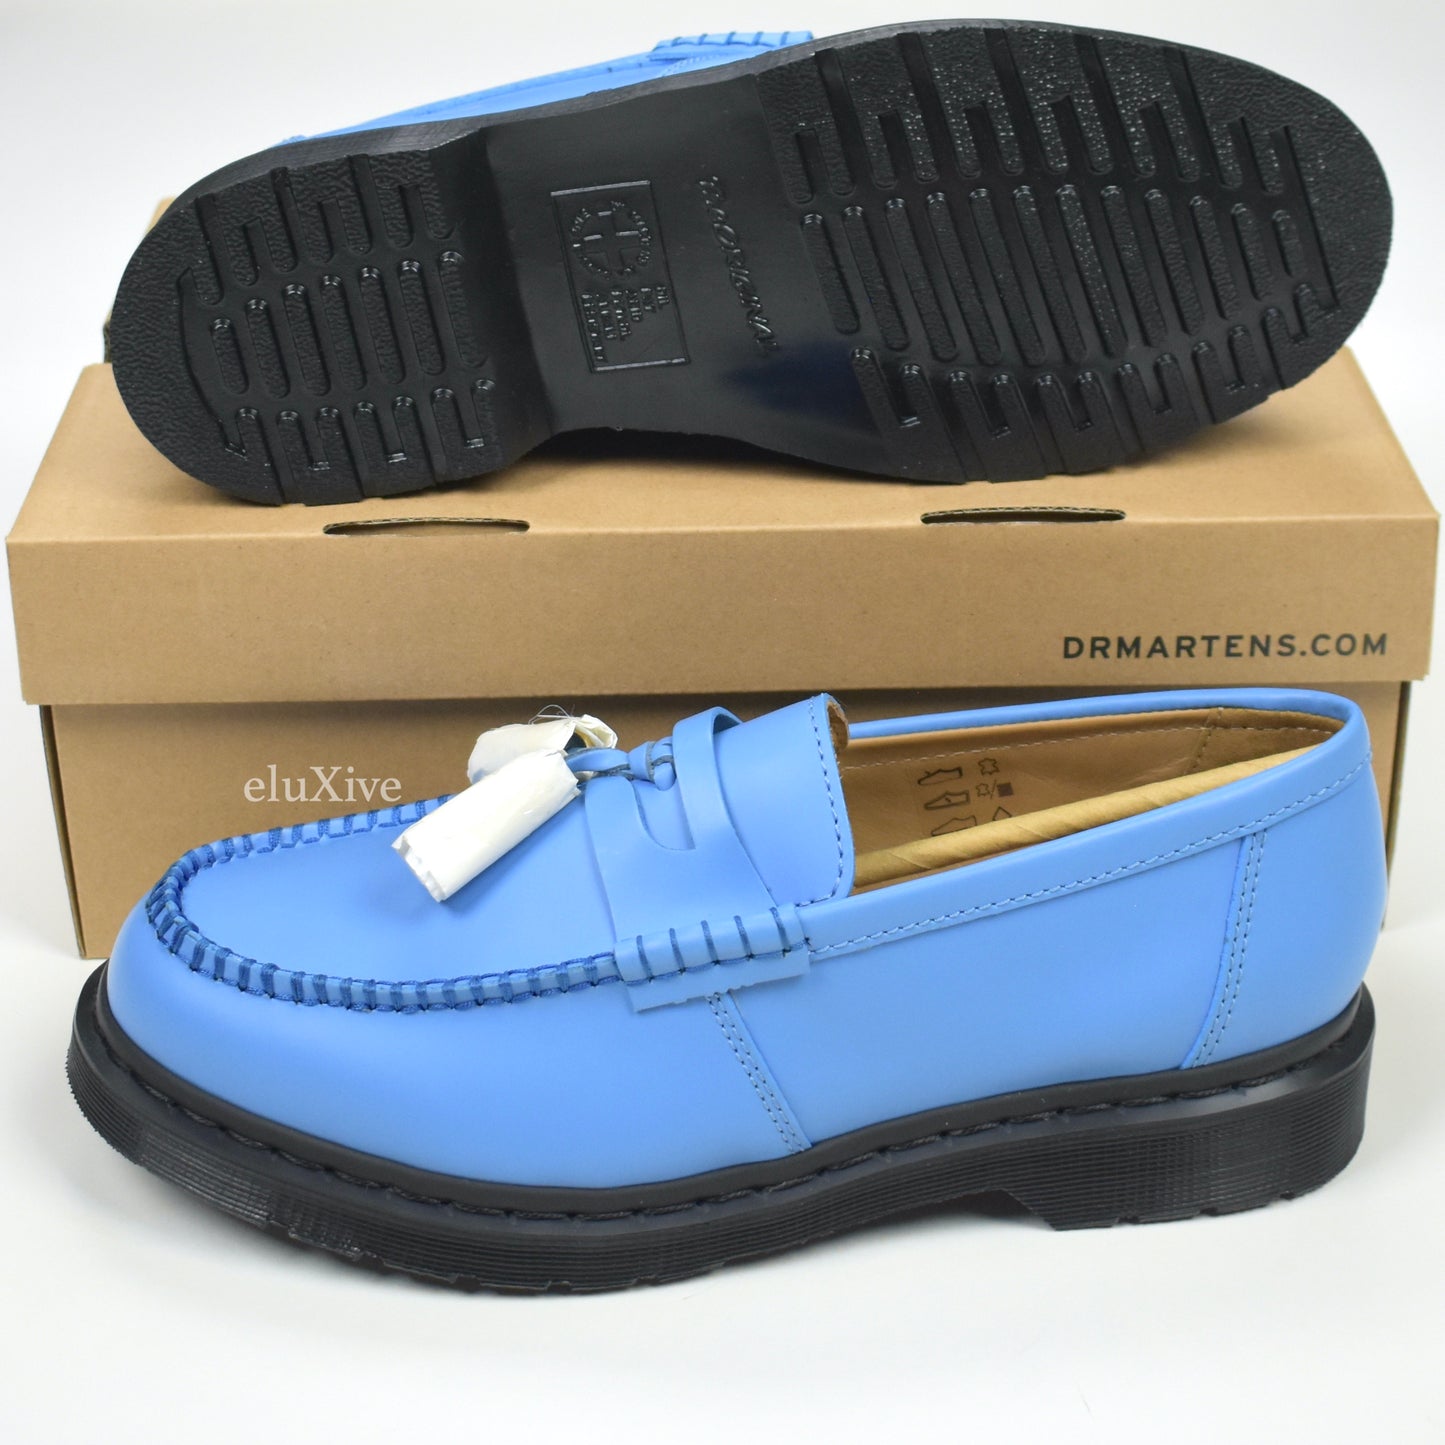 Supreme x Dr. Martens Blue Penton Tassel Loafers